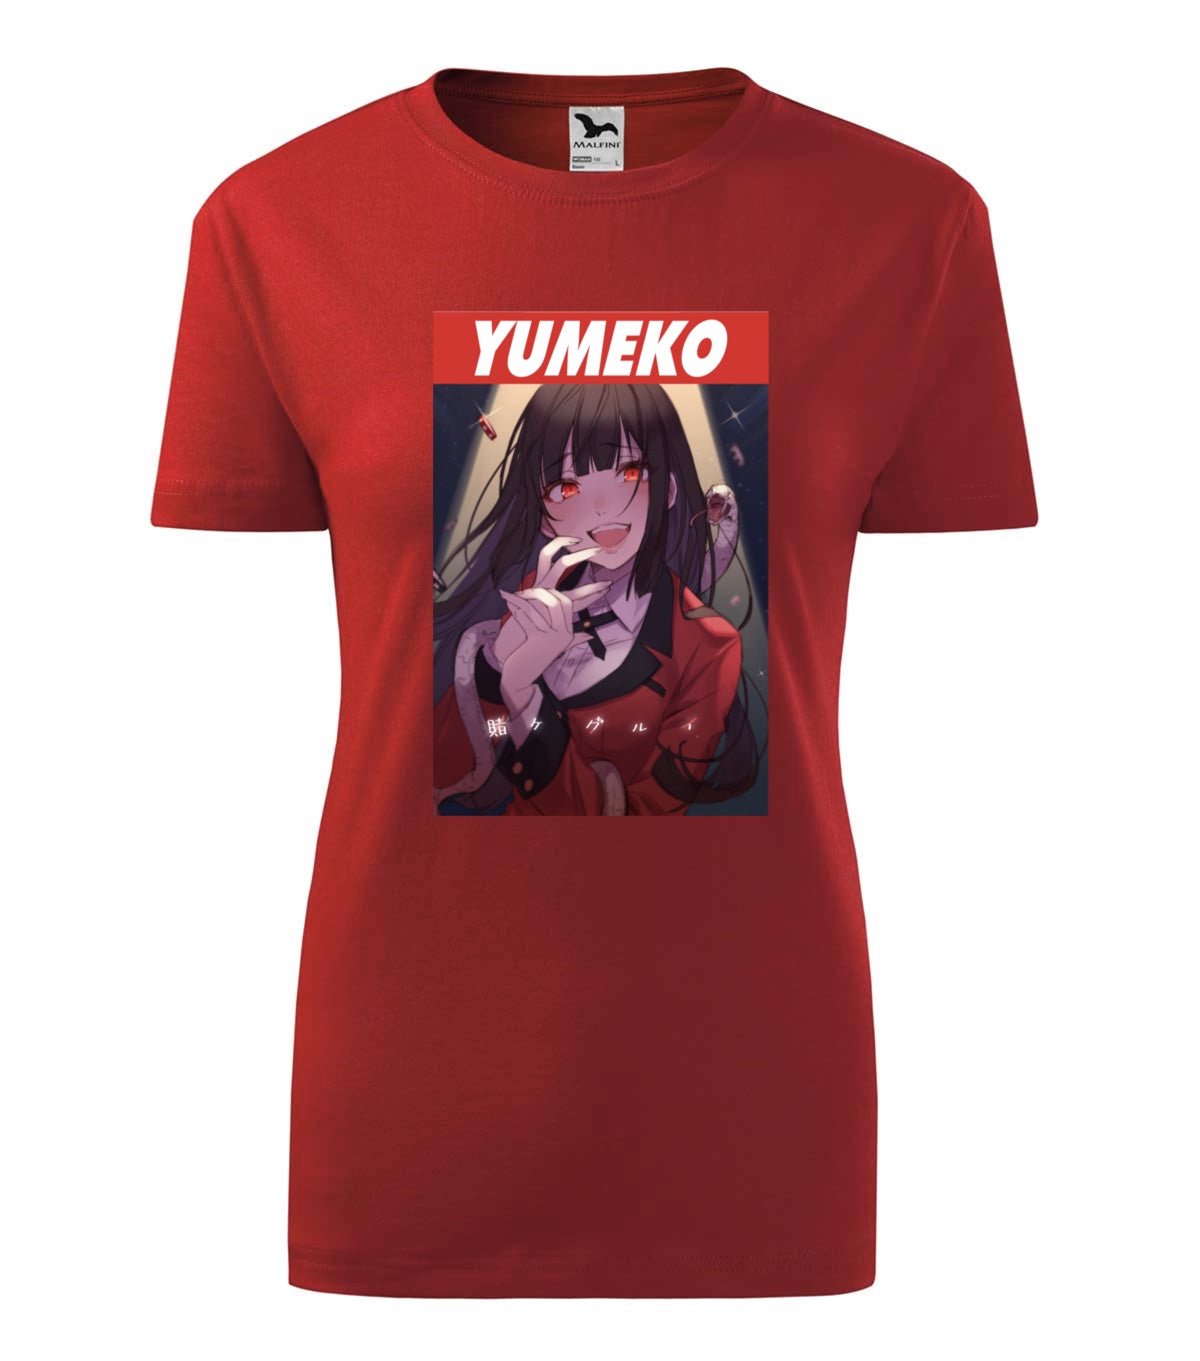 Yumeko női póló